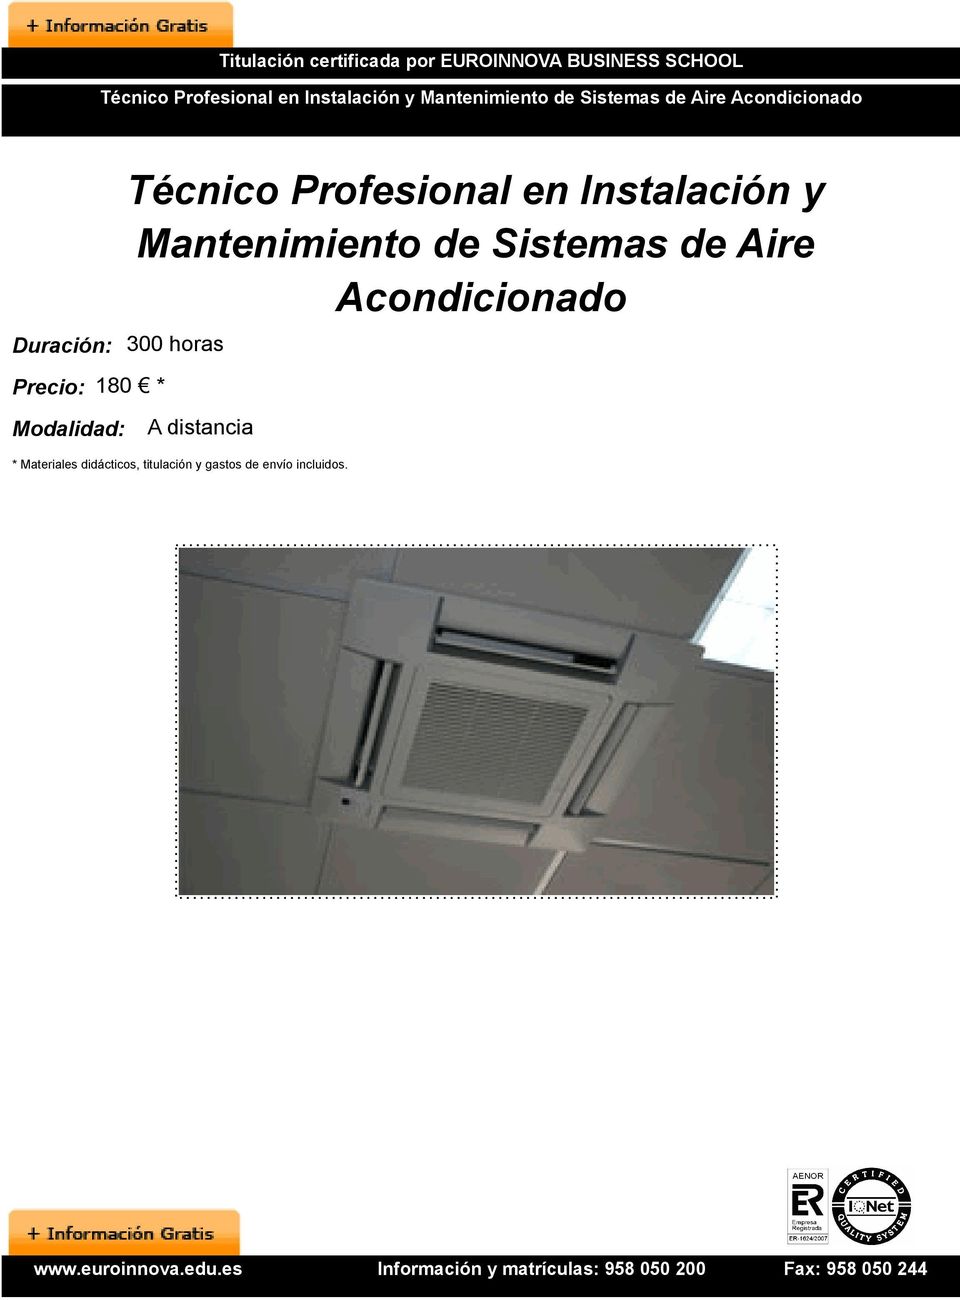 Precio: 180 * Técnico Profesional en Instalación y Mantenimiento de Sistemas de Aire